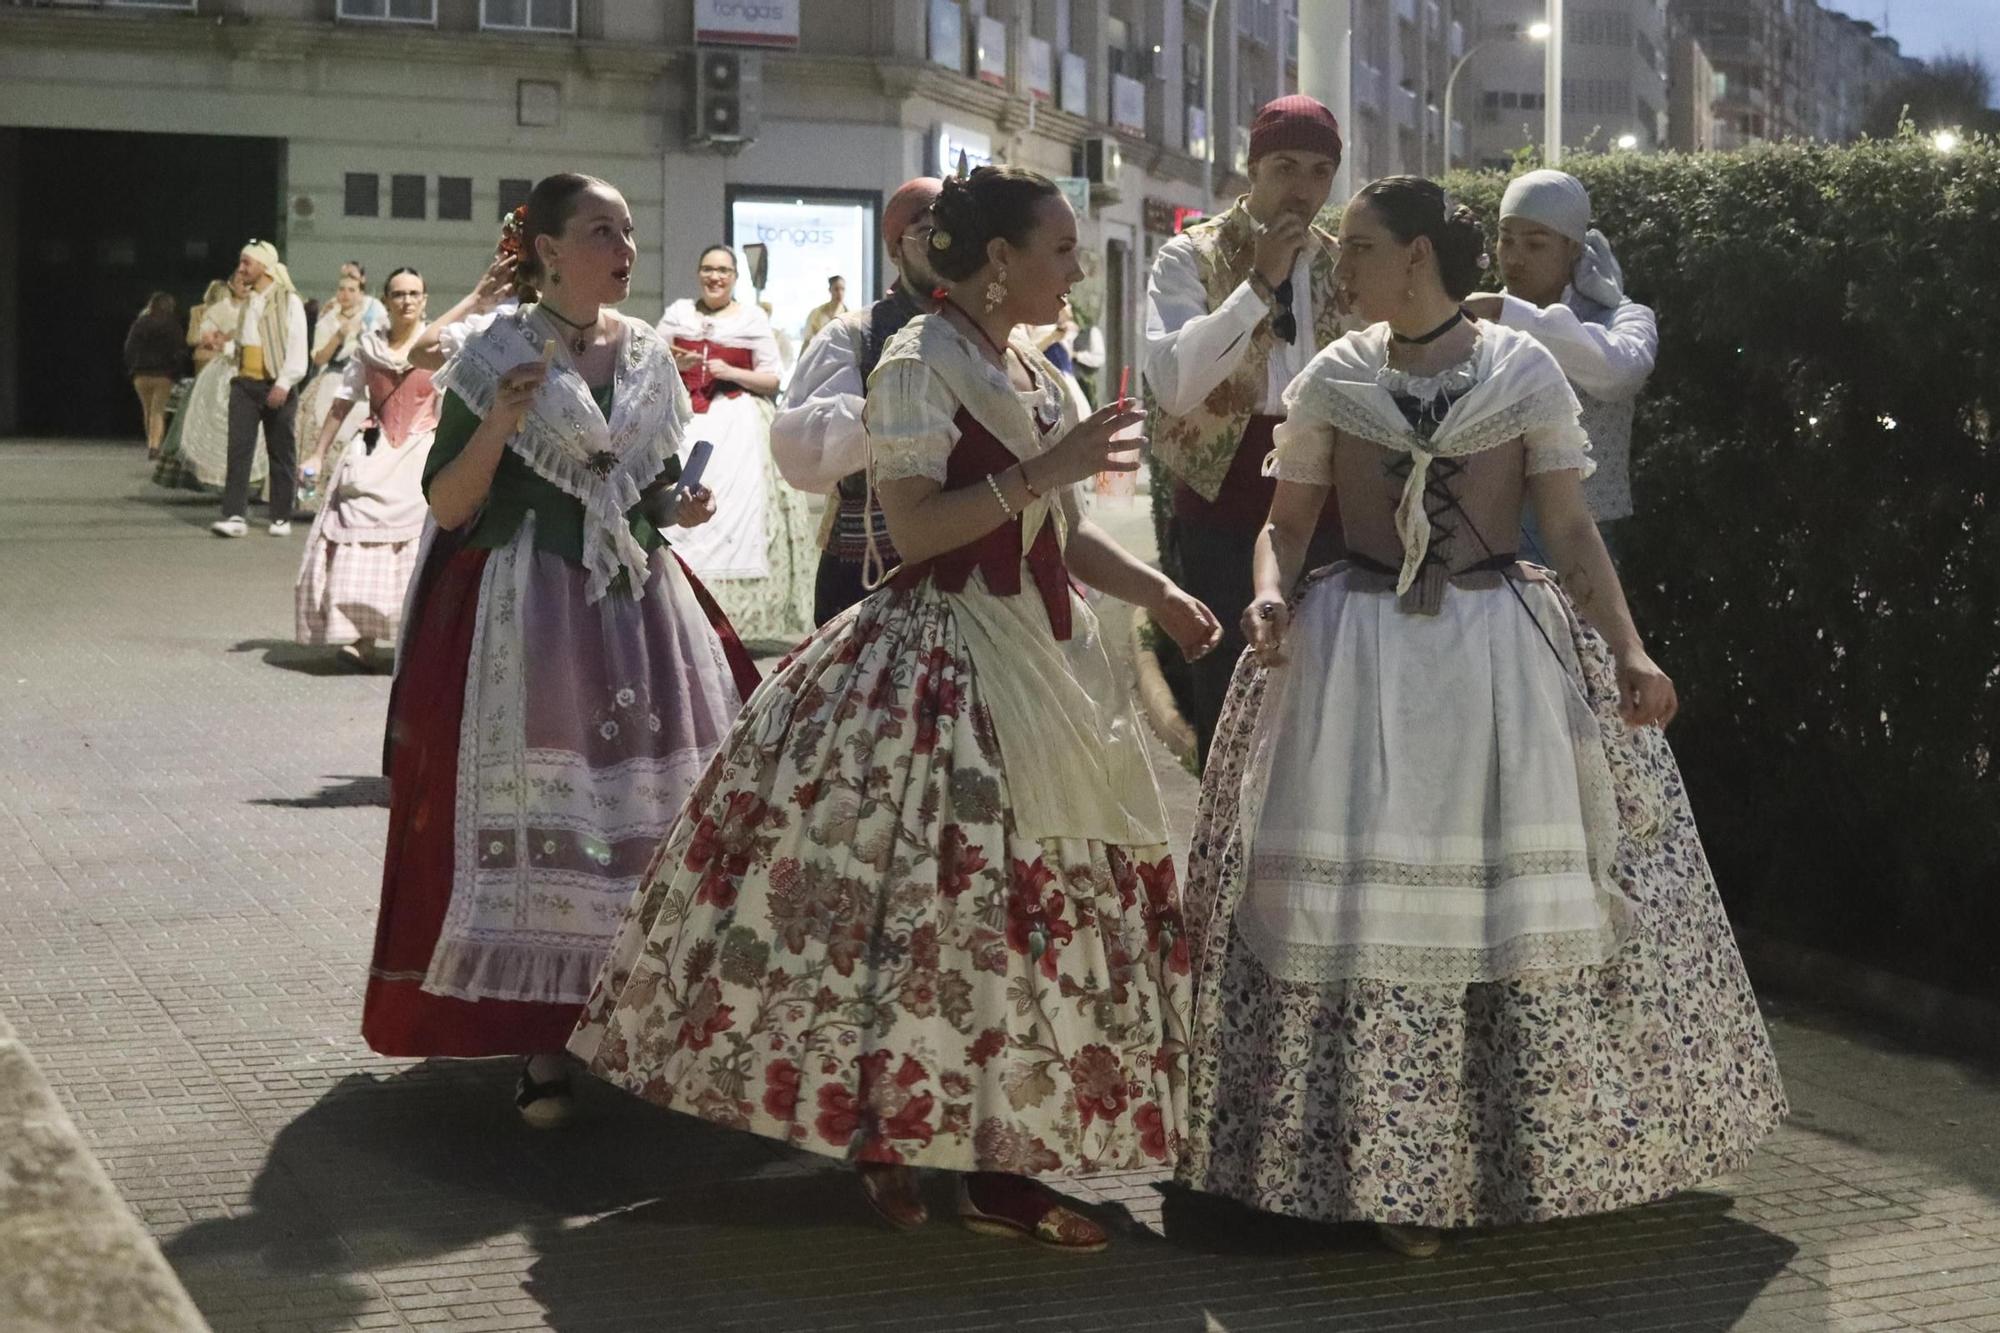 La tradicional visita a las fallas de Xàtiva en imágenes